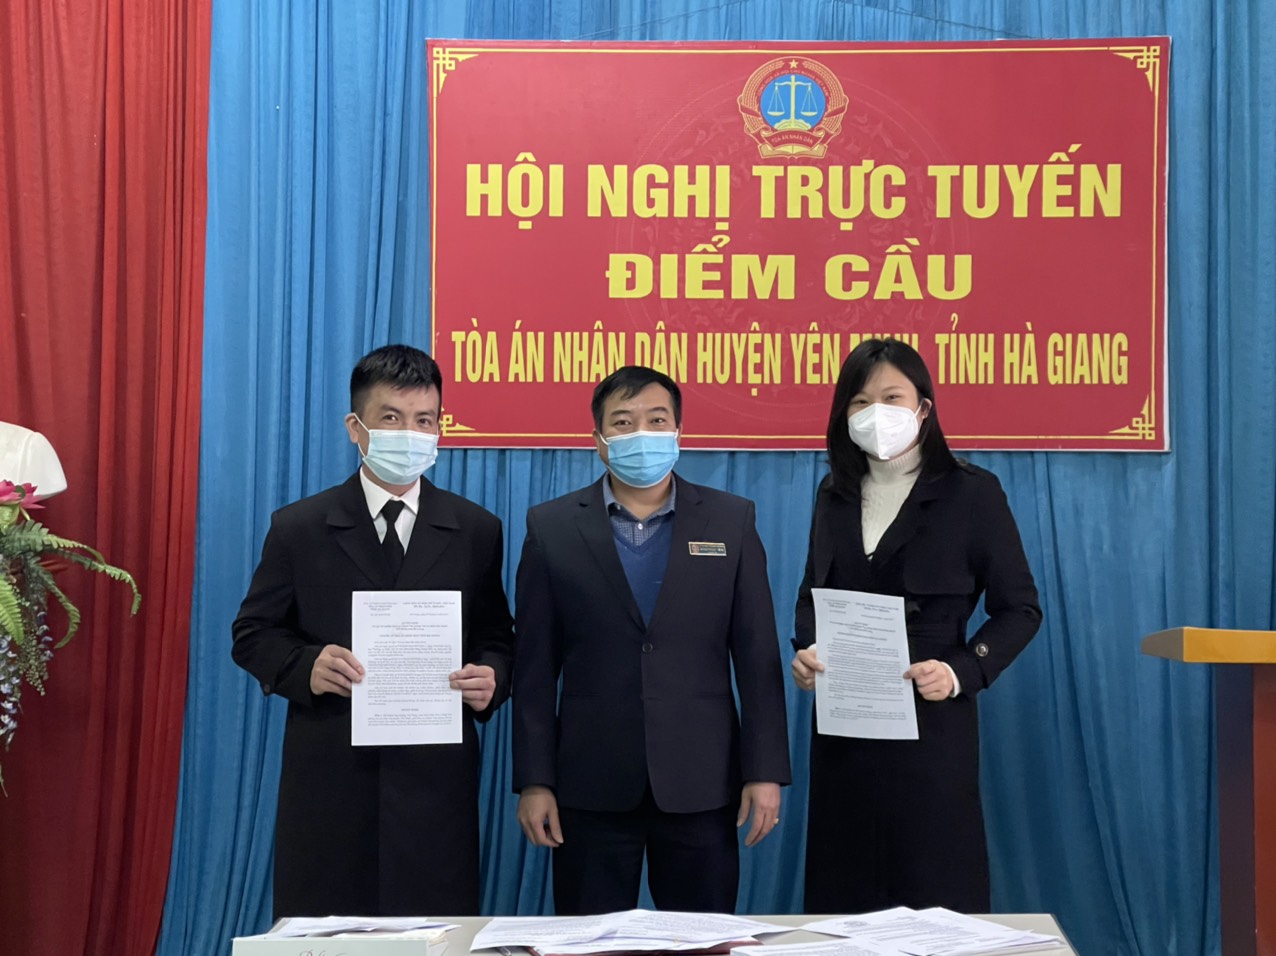 Tòa án nhân dân huyện Yên Minh  trao Quyết định bổ nhiệm lãnh đạo Văn phòng